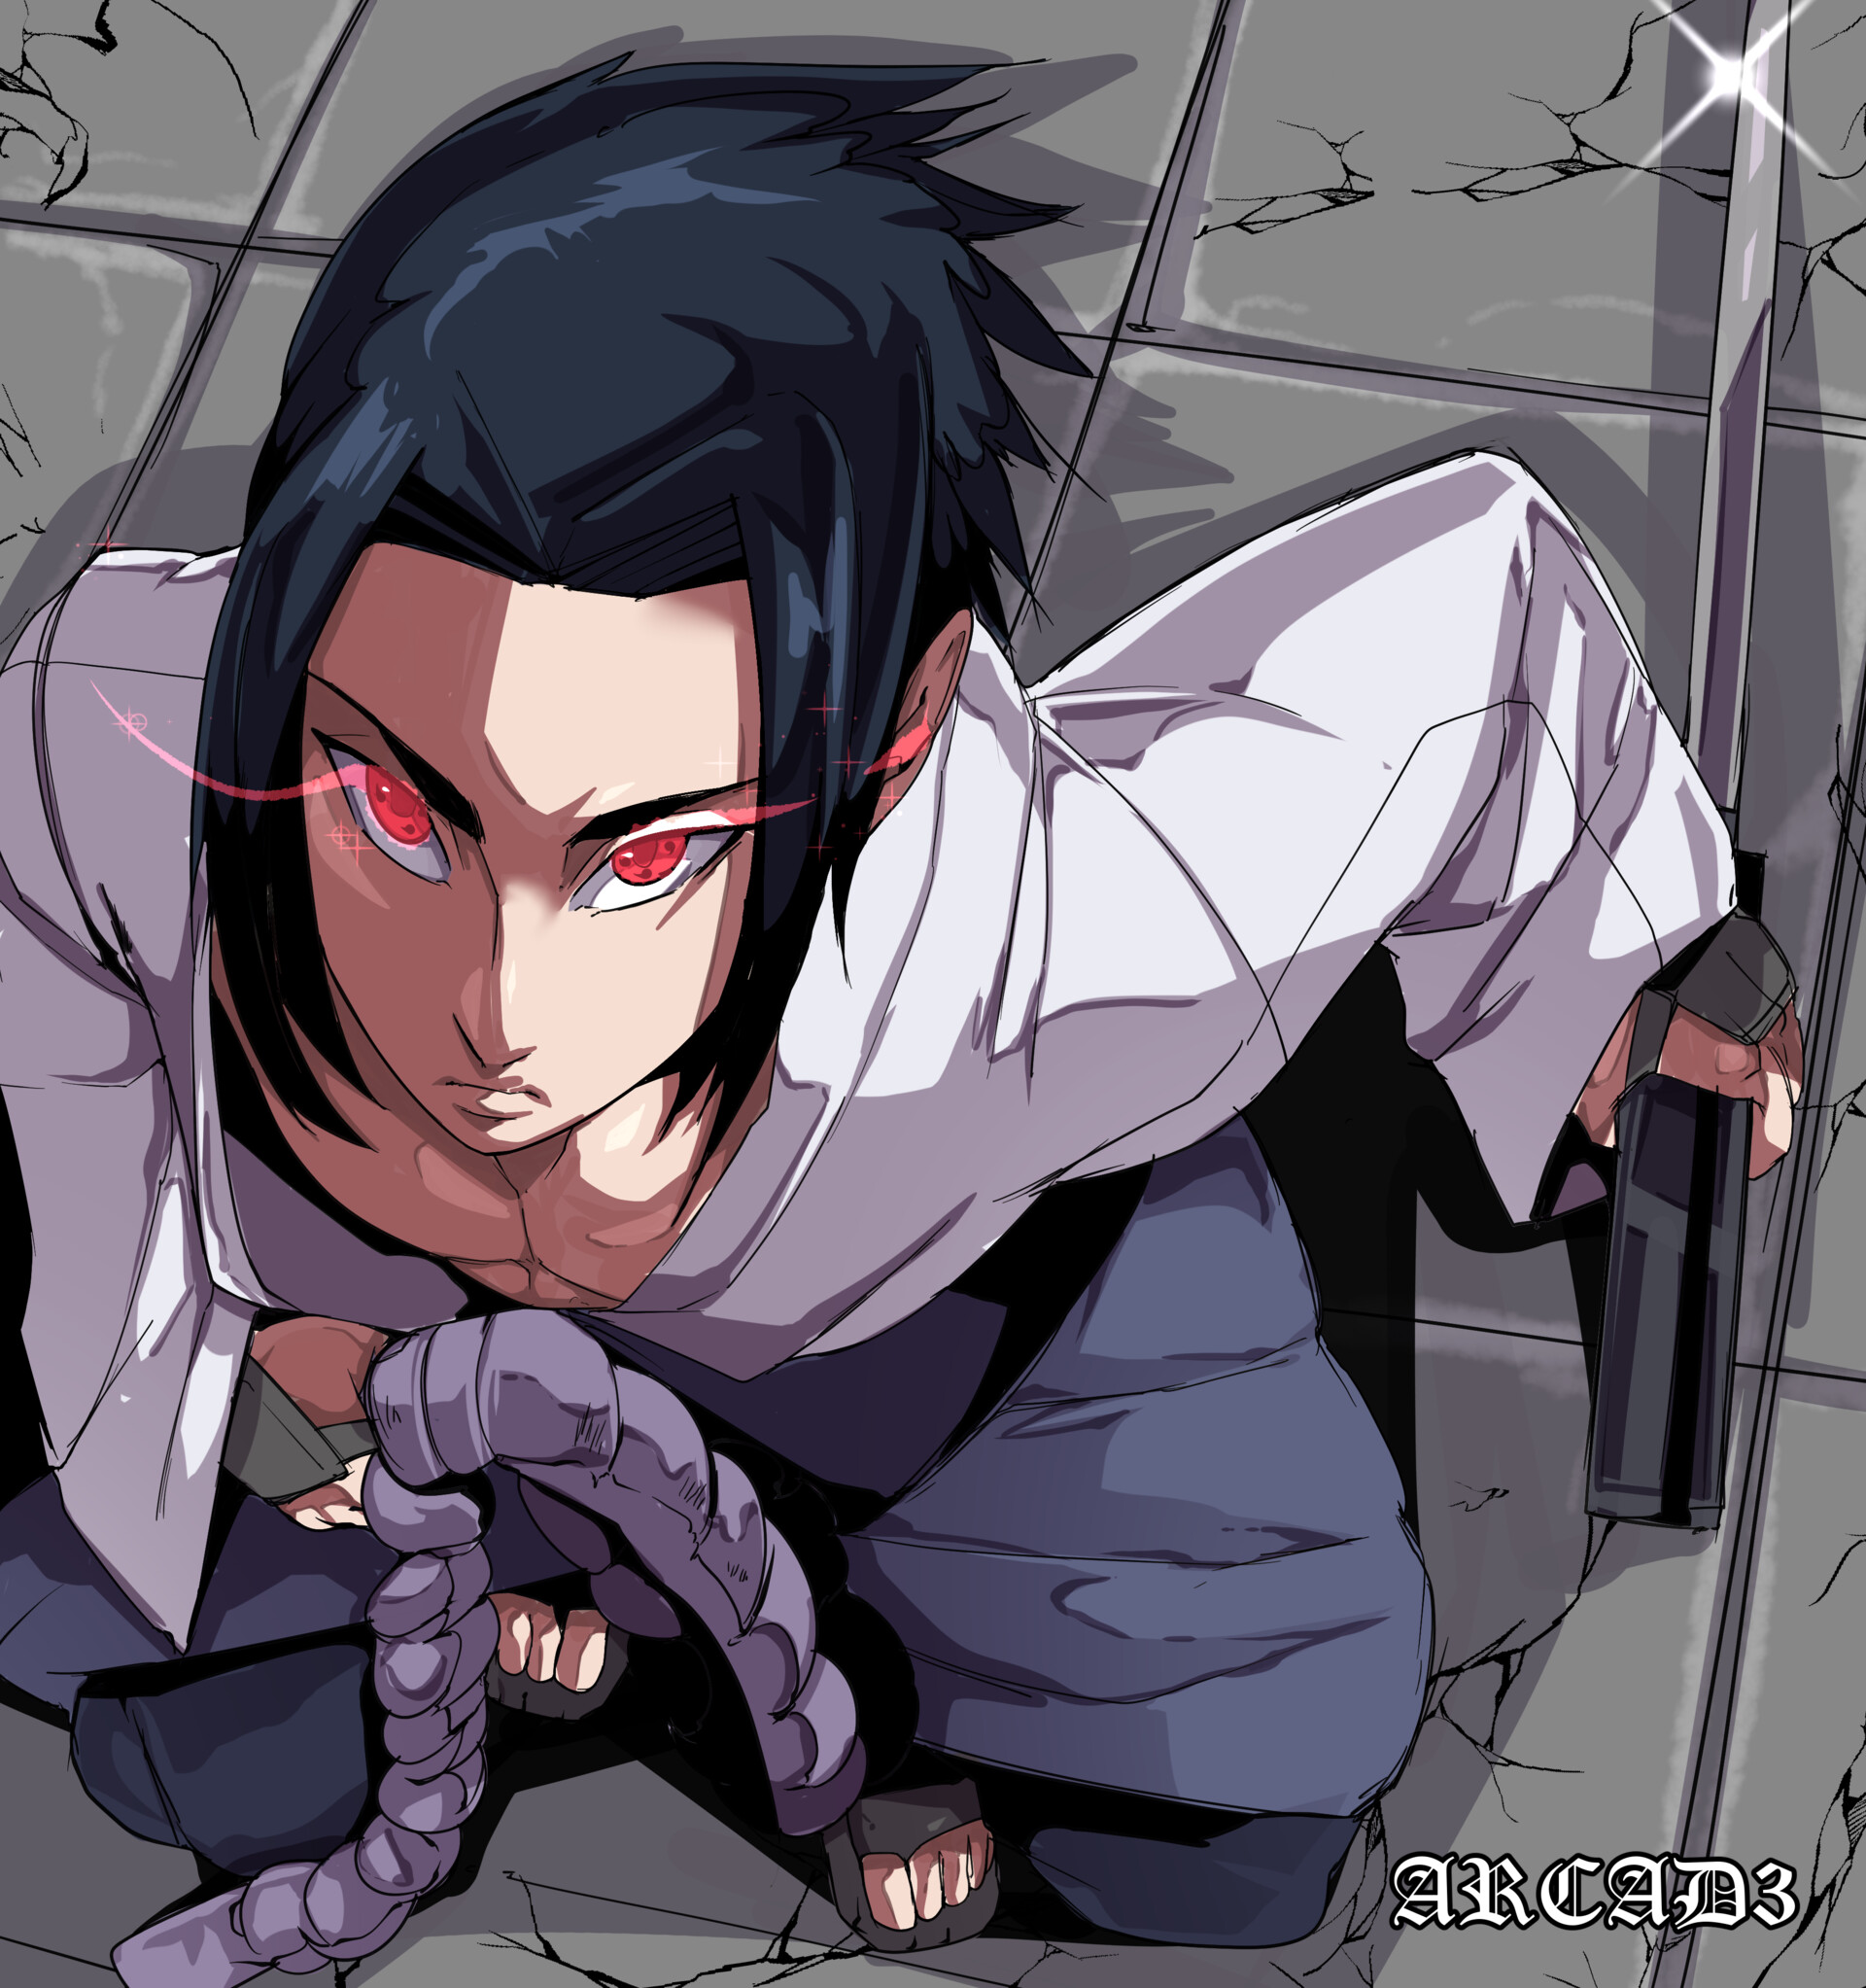 Sasuke #Uchiha